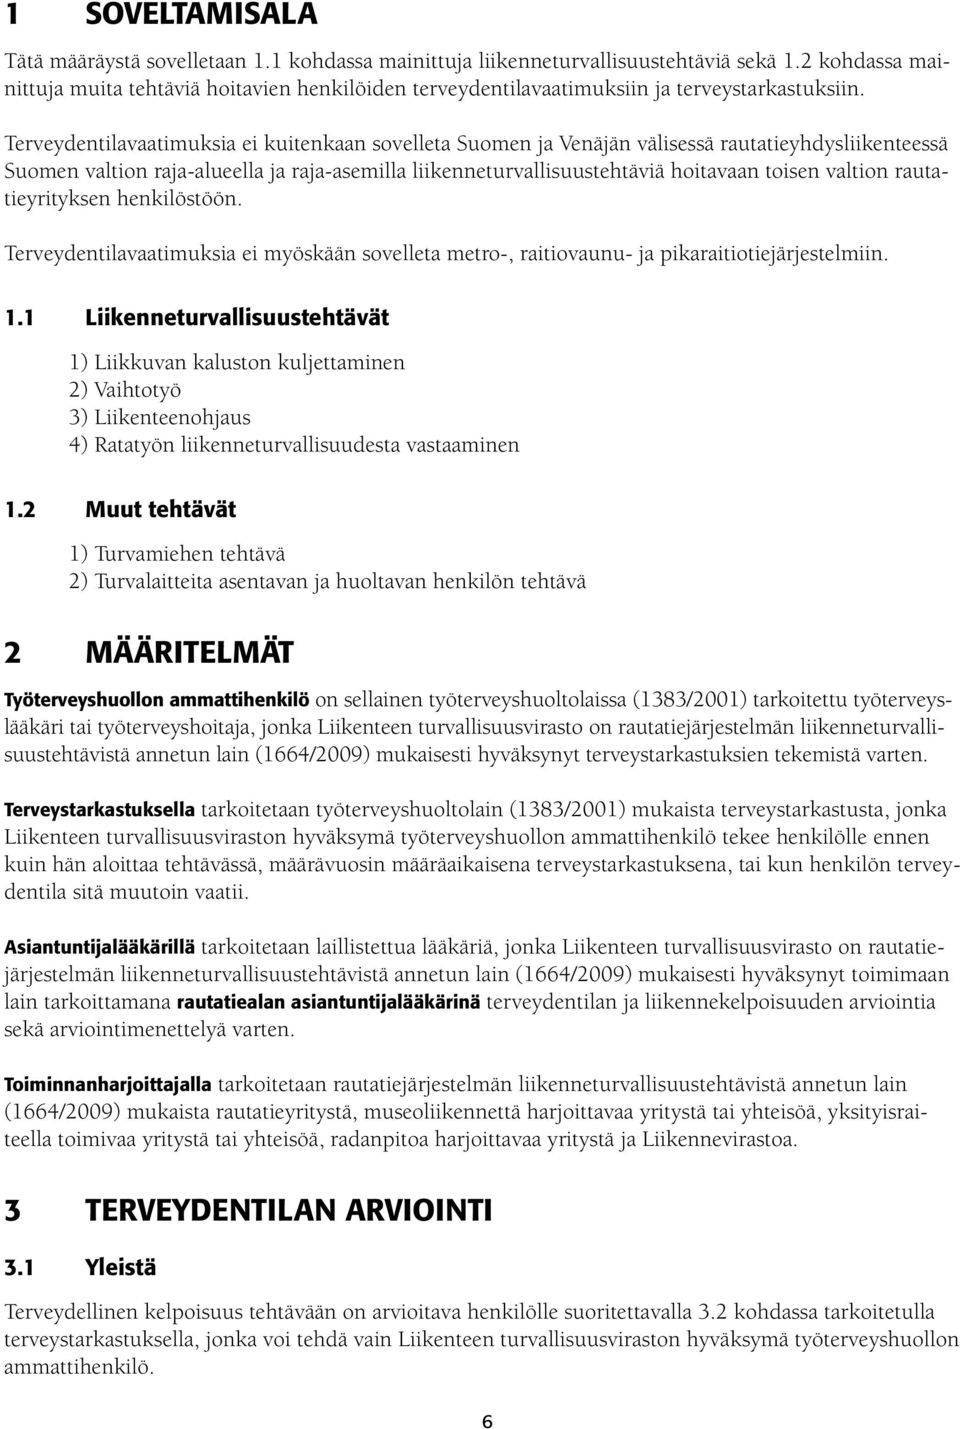 Terveydentilavaatimuksia kuitenkaan sovelleta Suomen ja Venäjän välisessä rautatieyhdysliikenteessä Suomen valtion raja-alueella ja raja-asemilla liikenneturvallisuustehtäviä hoitavaan toisen valtion